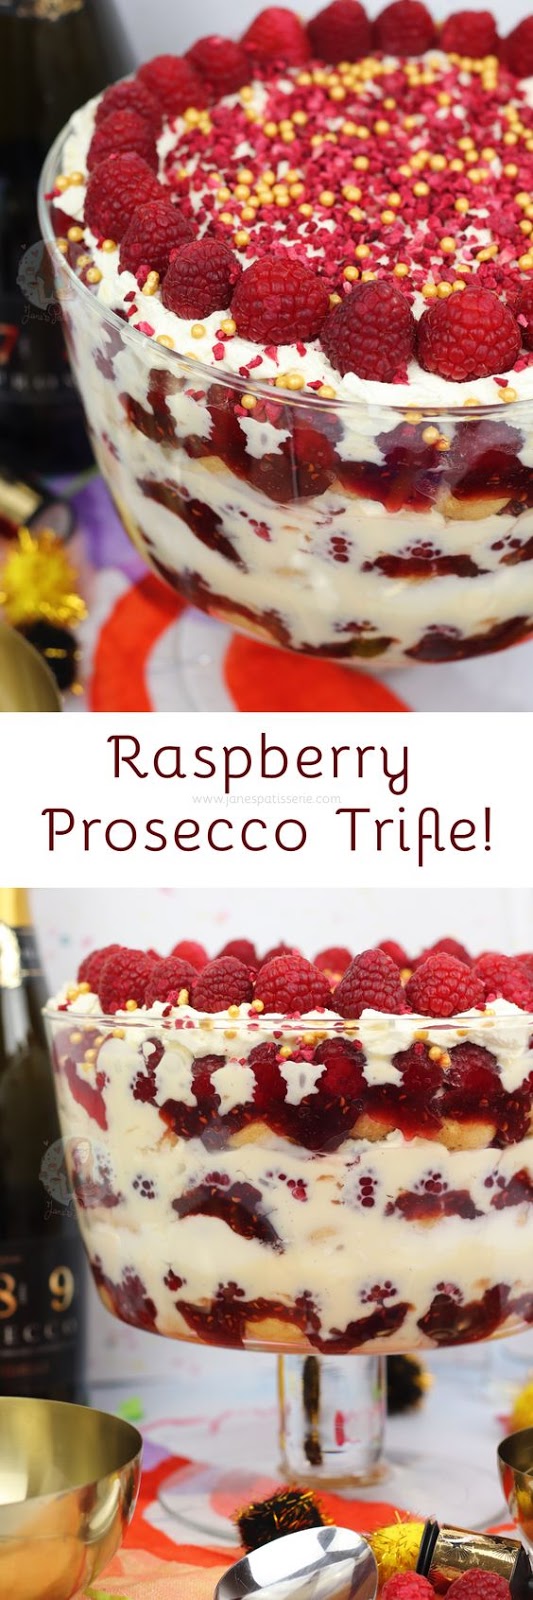 Raspberry Prosecco Trifle